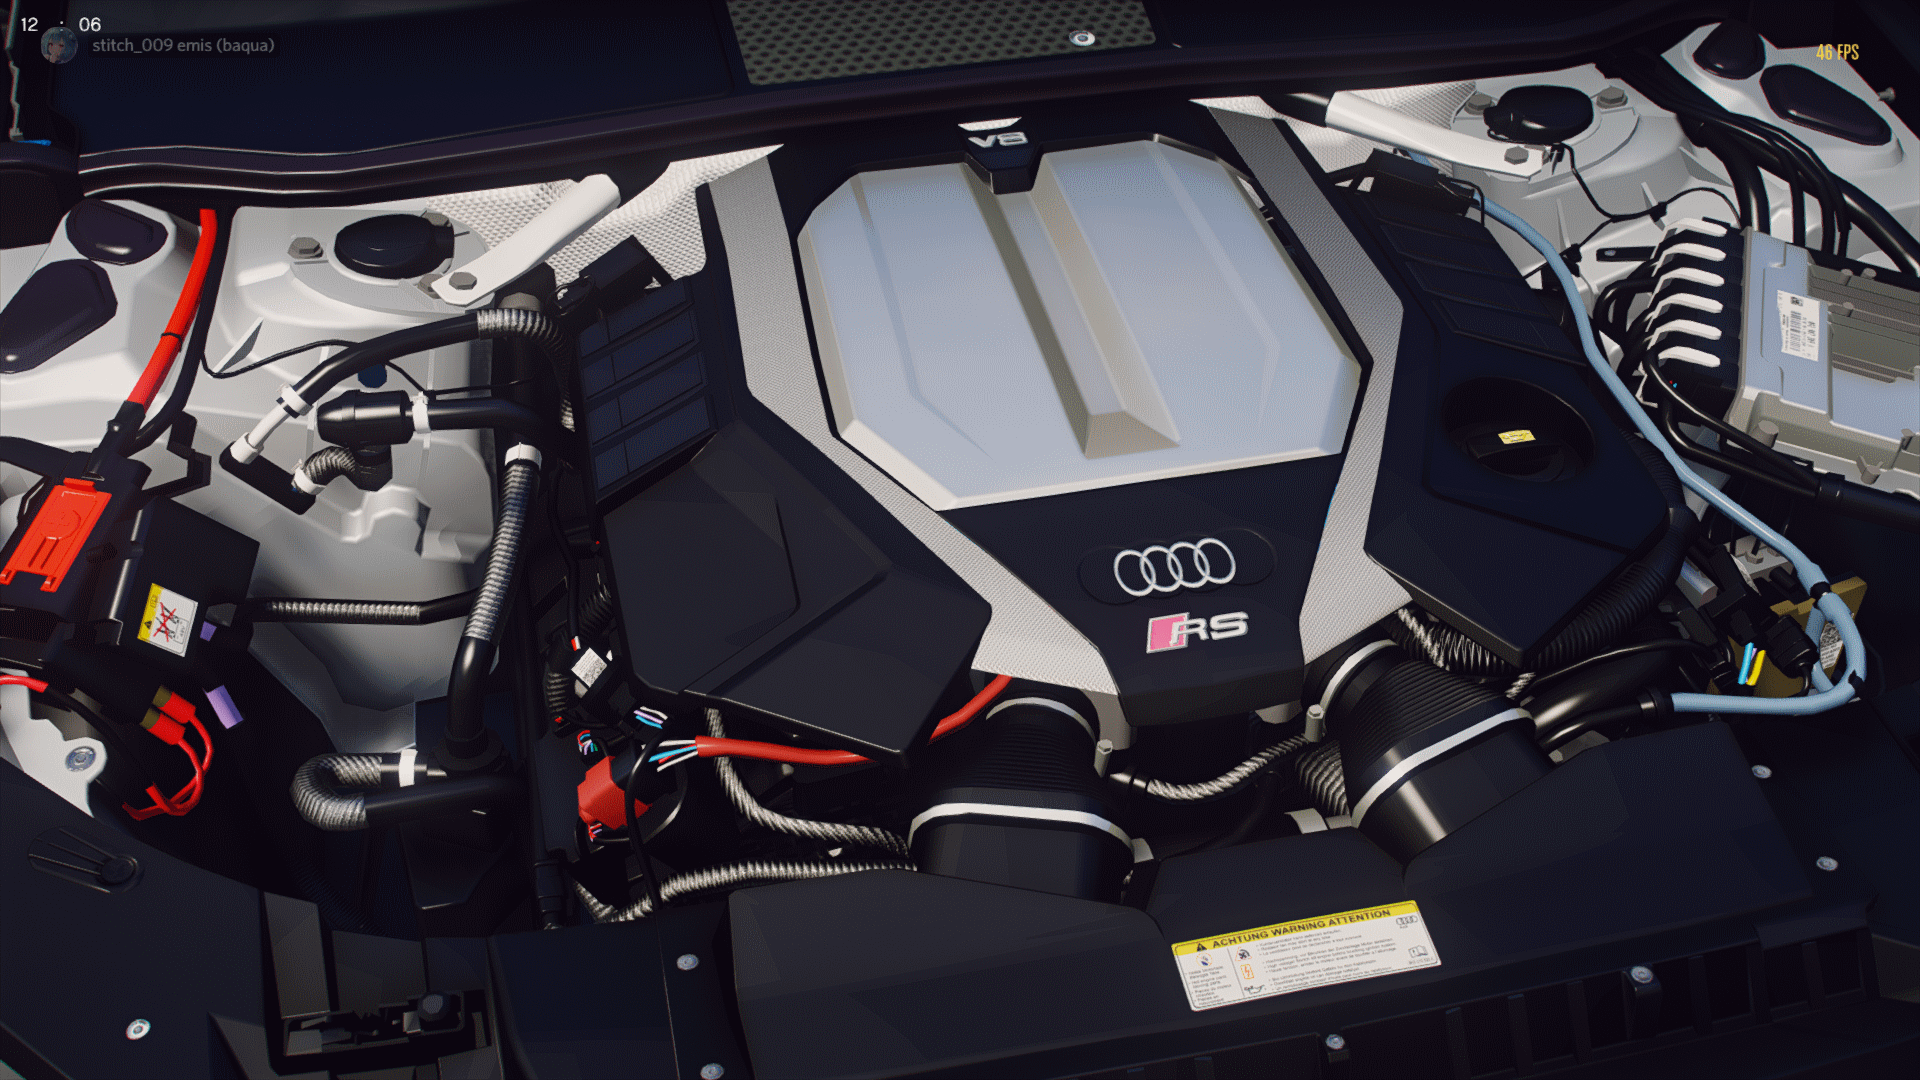 Volkswagen-Audi RS6 EA825 V8 Engine Sound [OIV Add-On / FiveM] -  